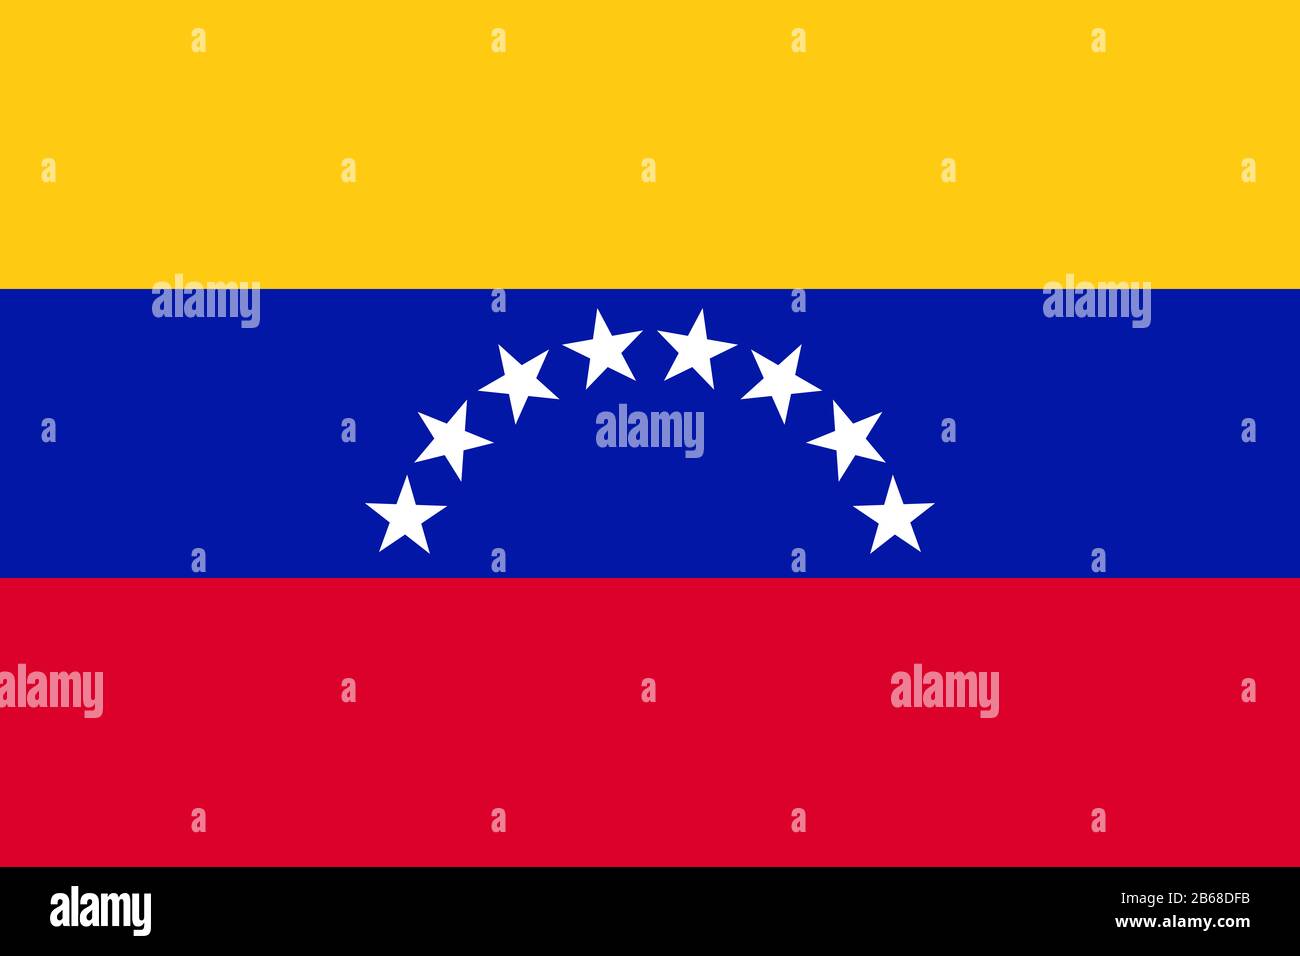 Flagge Venezuelas - Standardverhältnis der venezolanischen Flagge - True RGB-Farbmodus Stockfoto